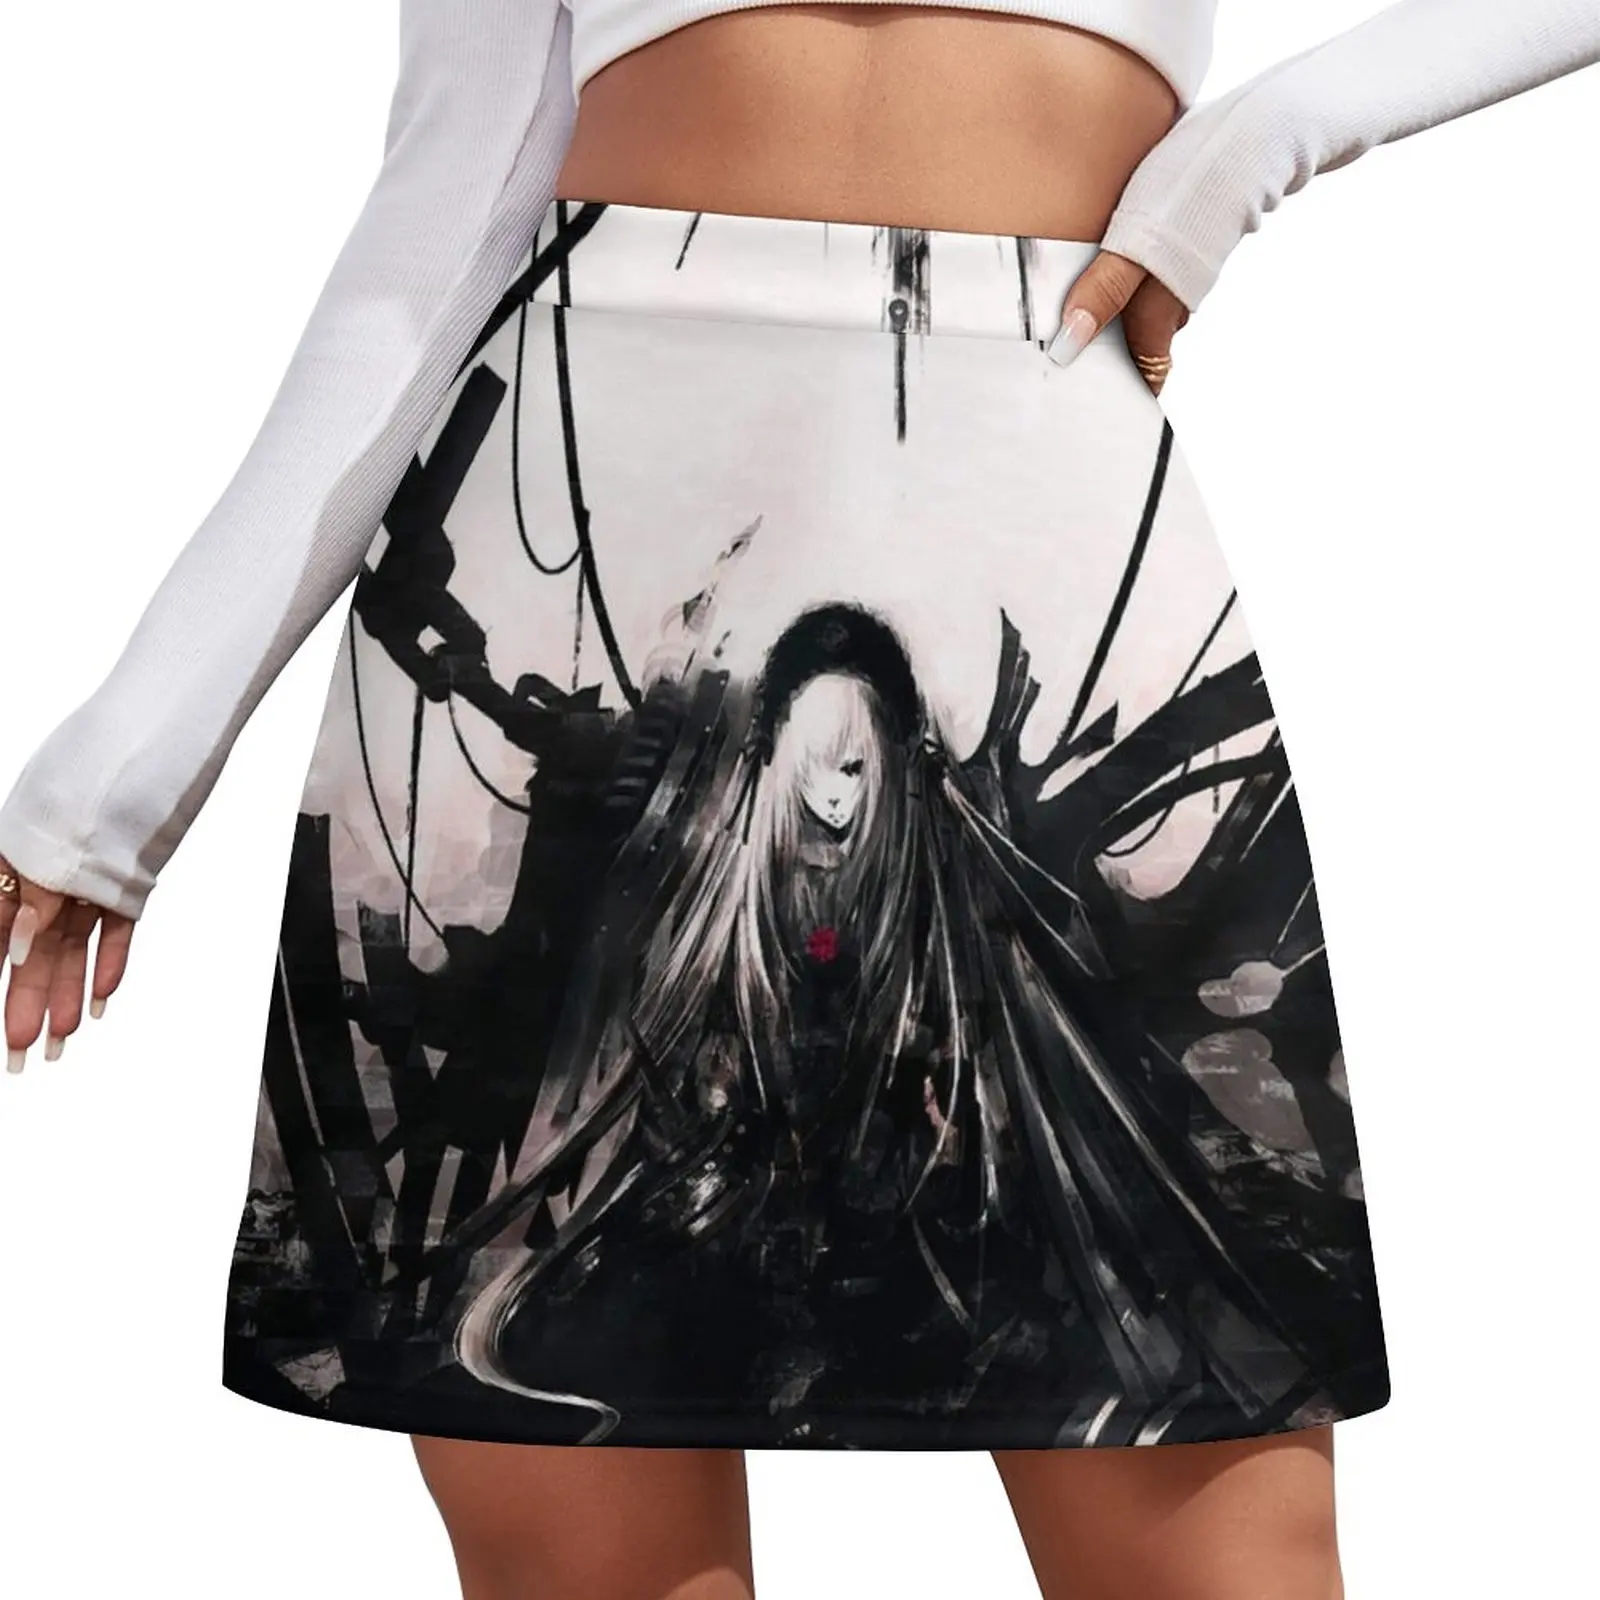 Anime - dark Mini Skirt short skirt Korean clothing